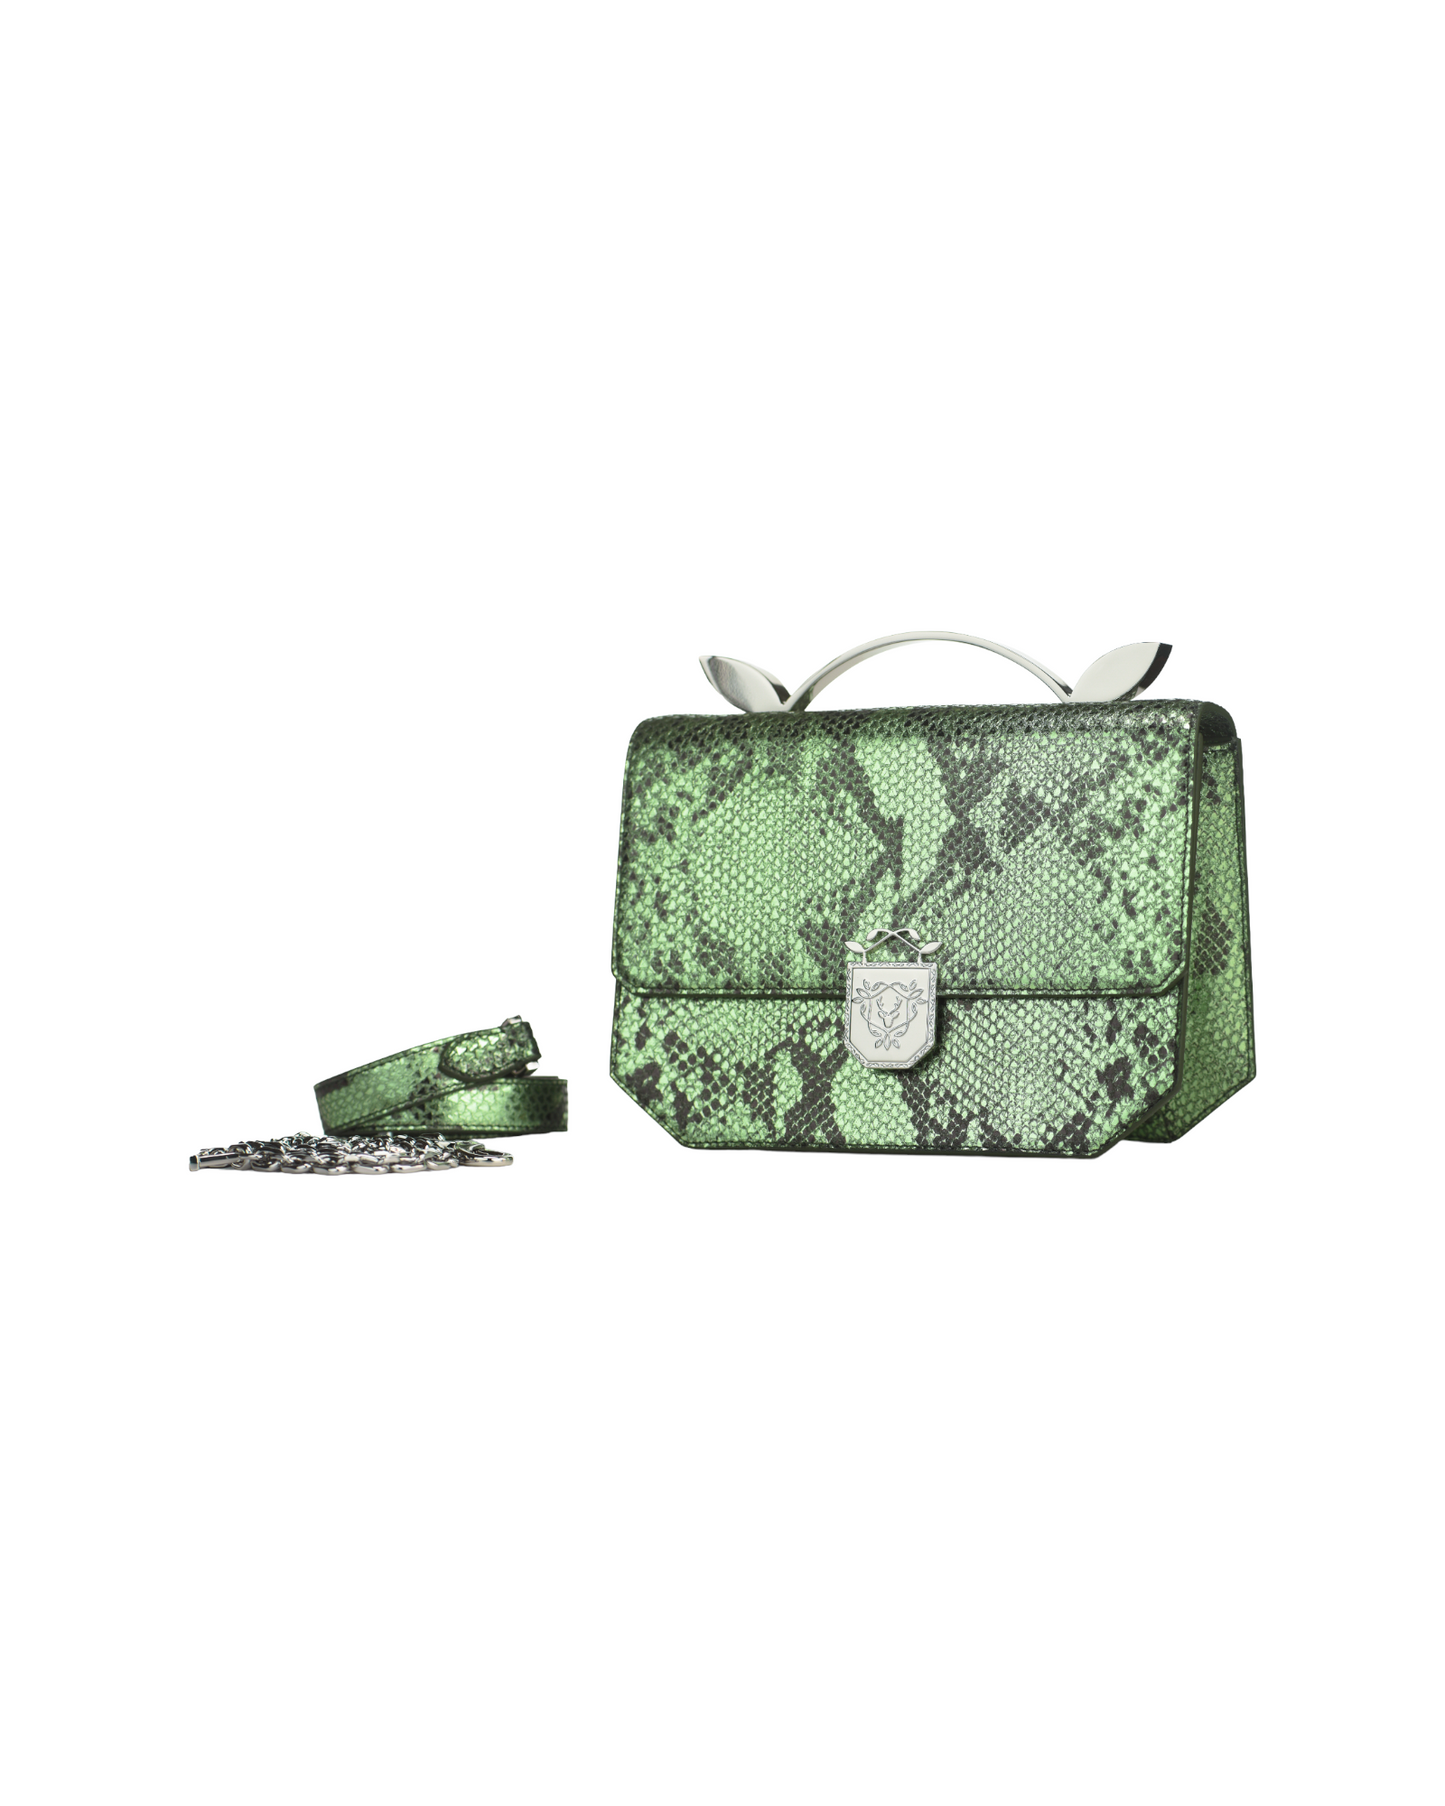 Rania Manasra Green Opulent Shoulder Bag